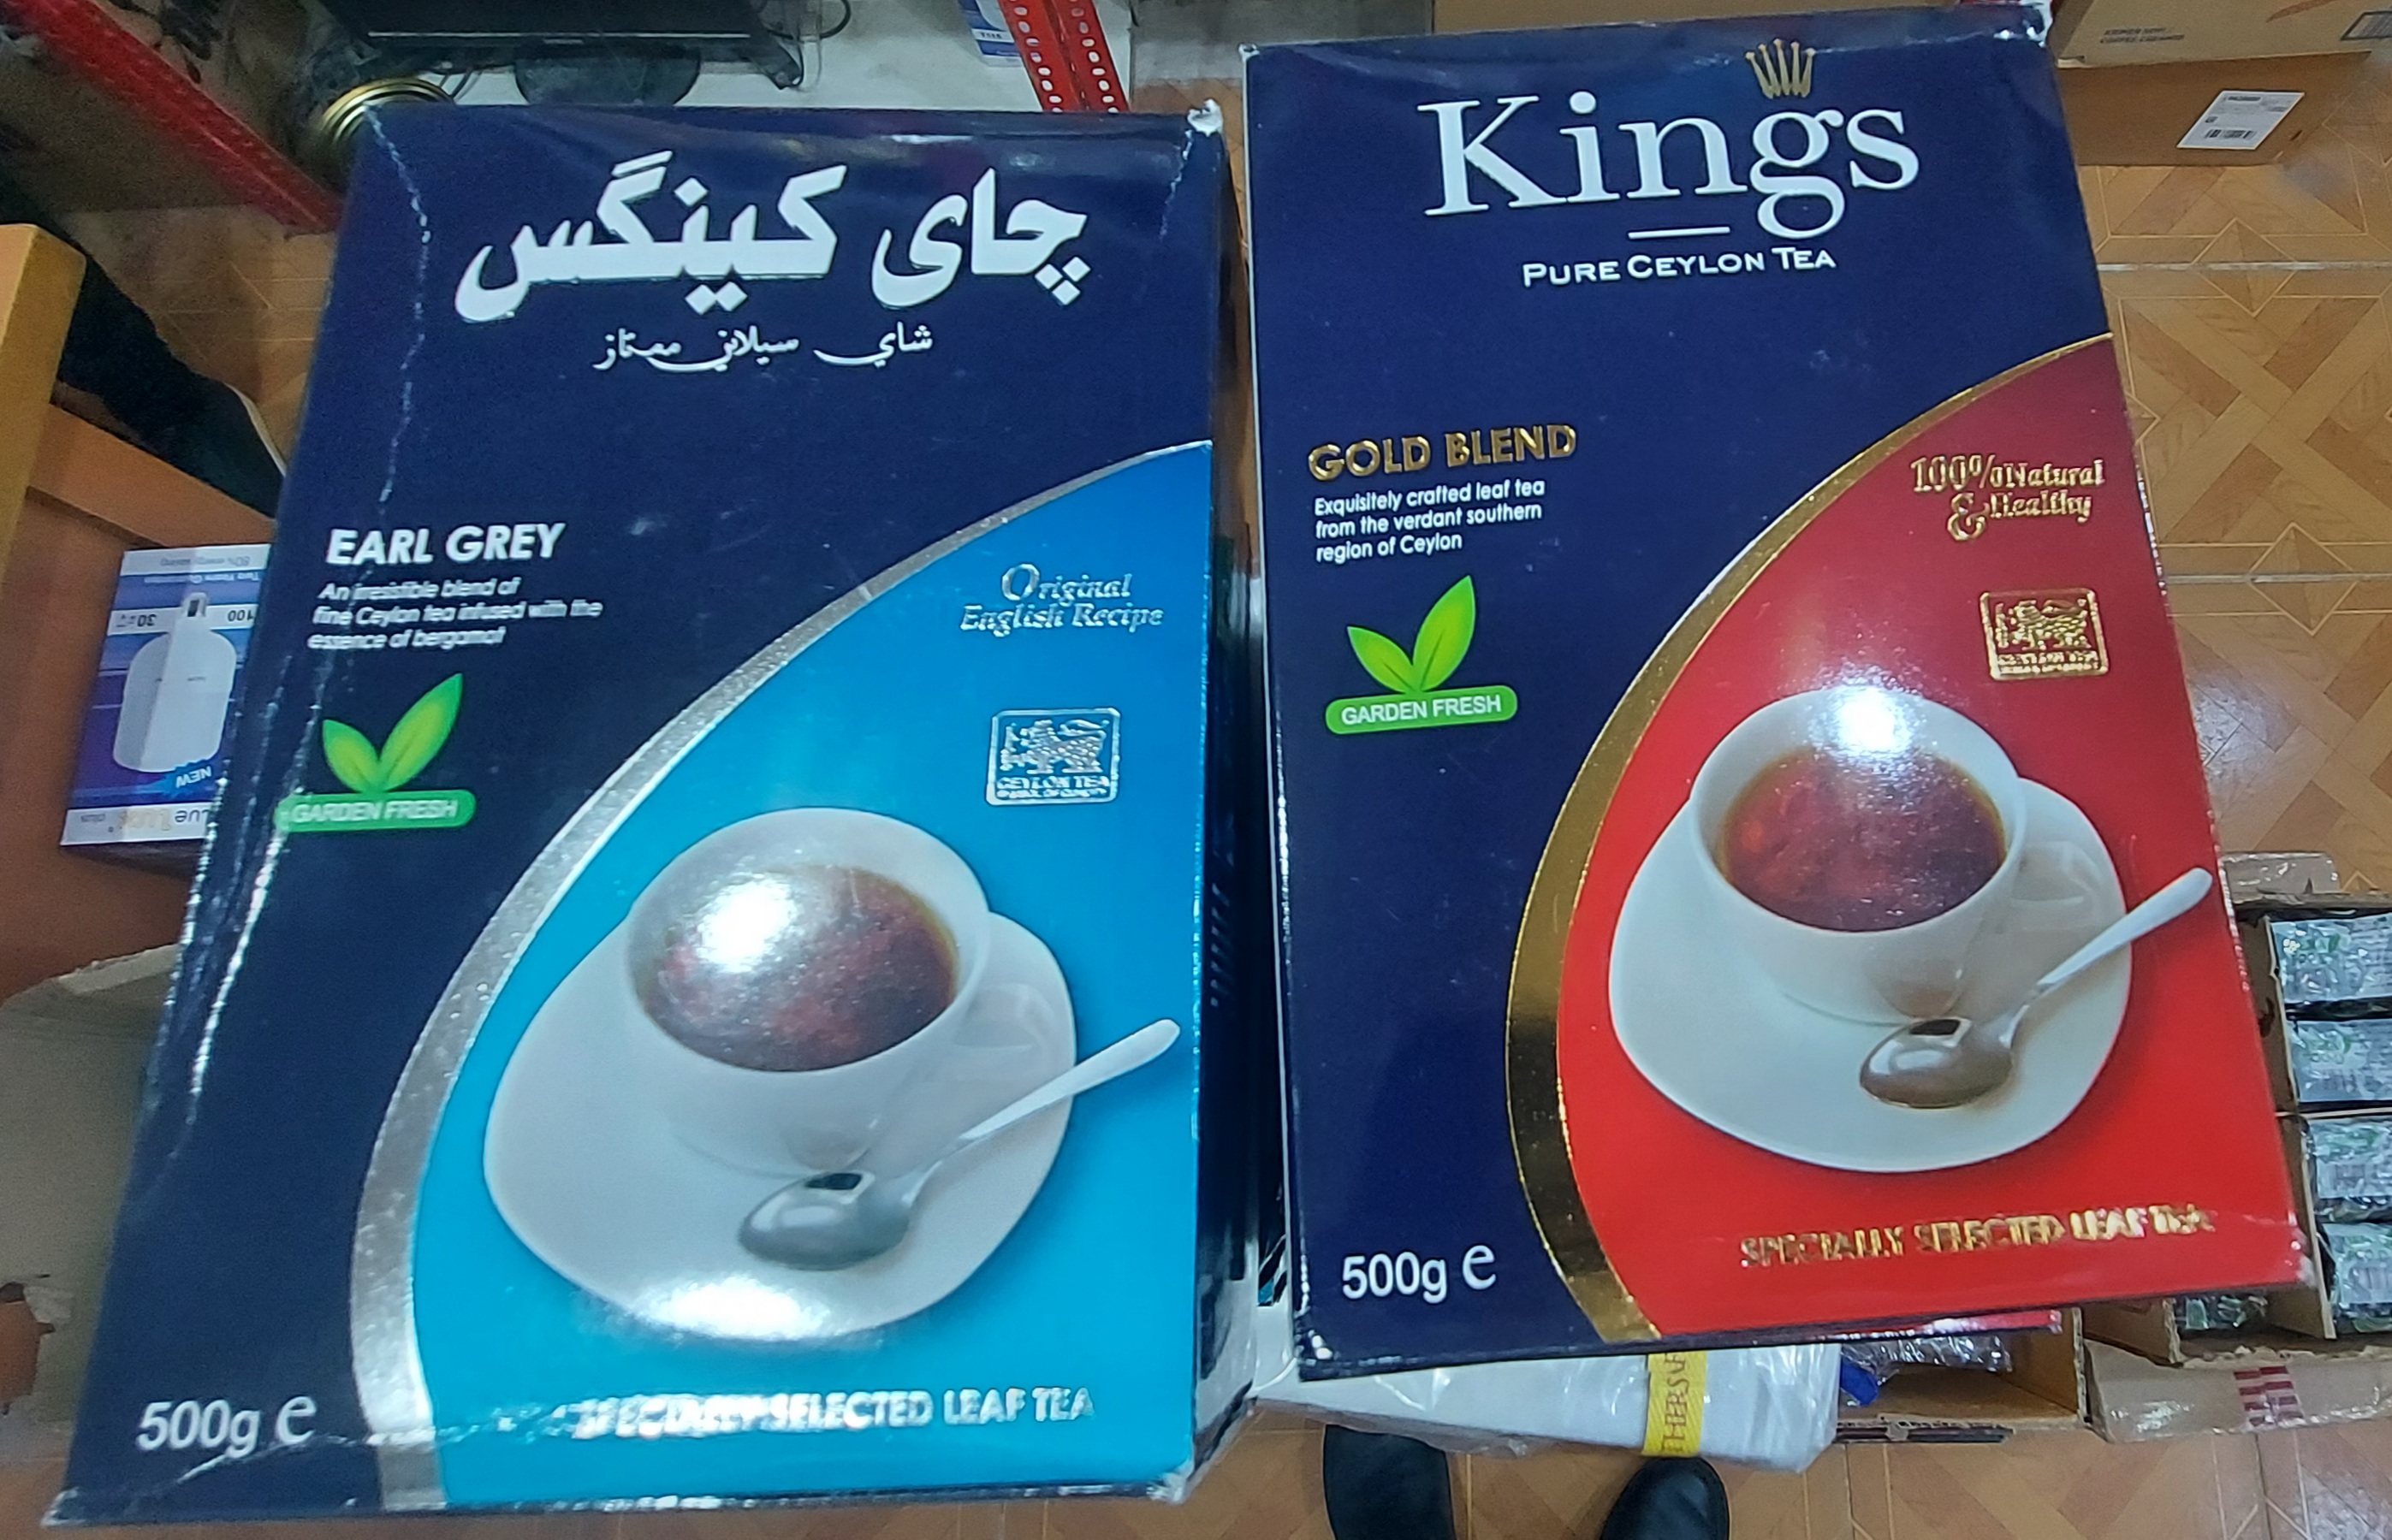  چای کینگز سیلانی ساده وعطری 500 گرم Kings EarlGrey gold